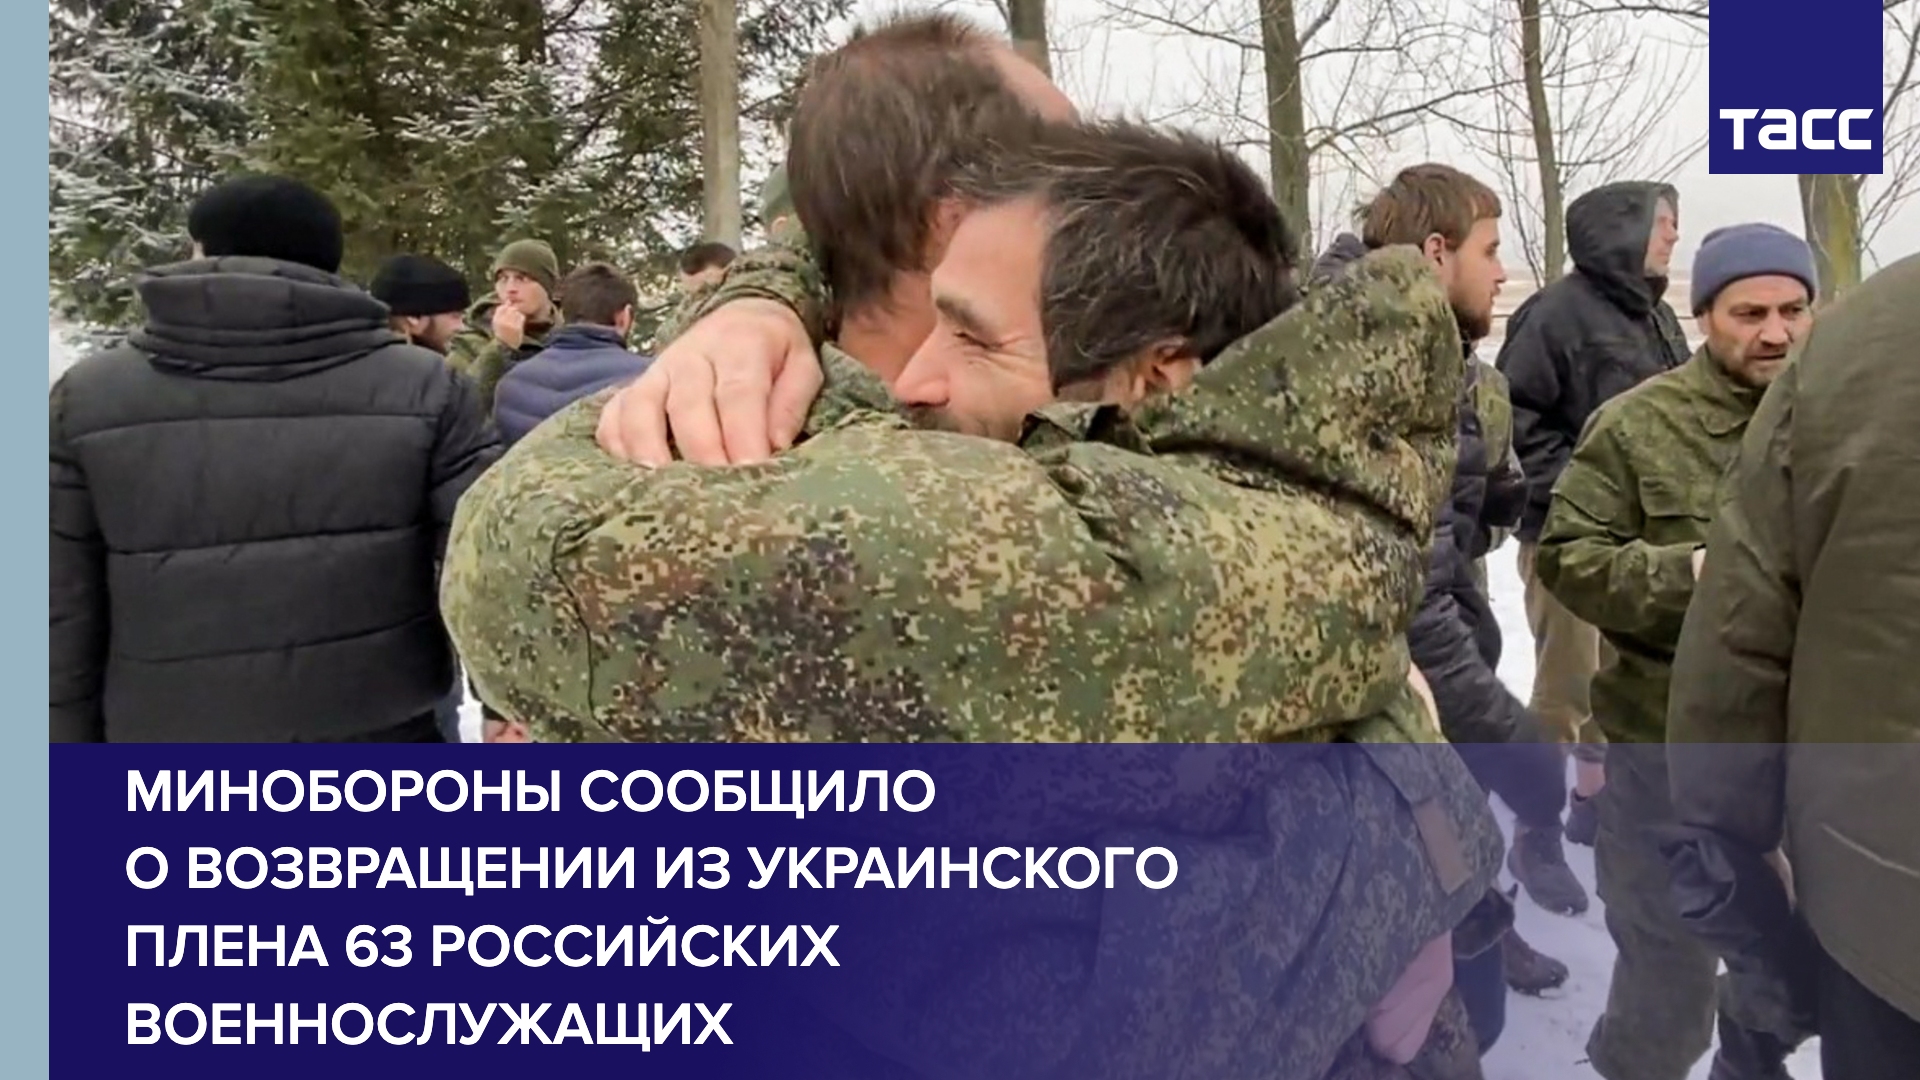 Минобороны РФ сообщило о возвращении из украинского плена 63 российских военнослужащих